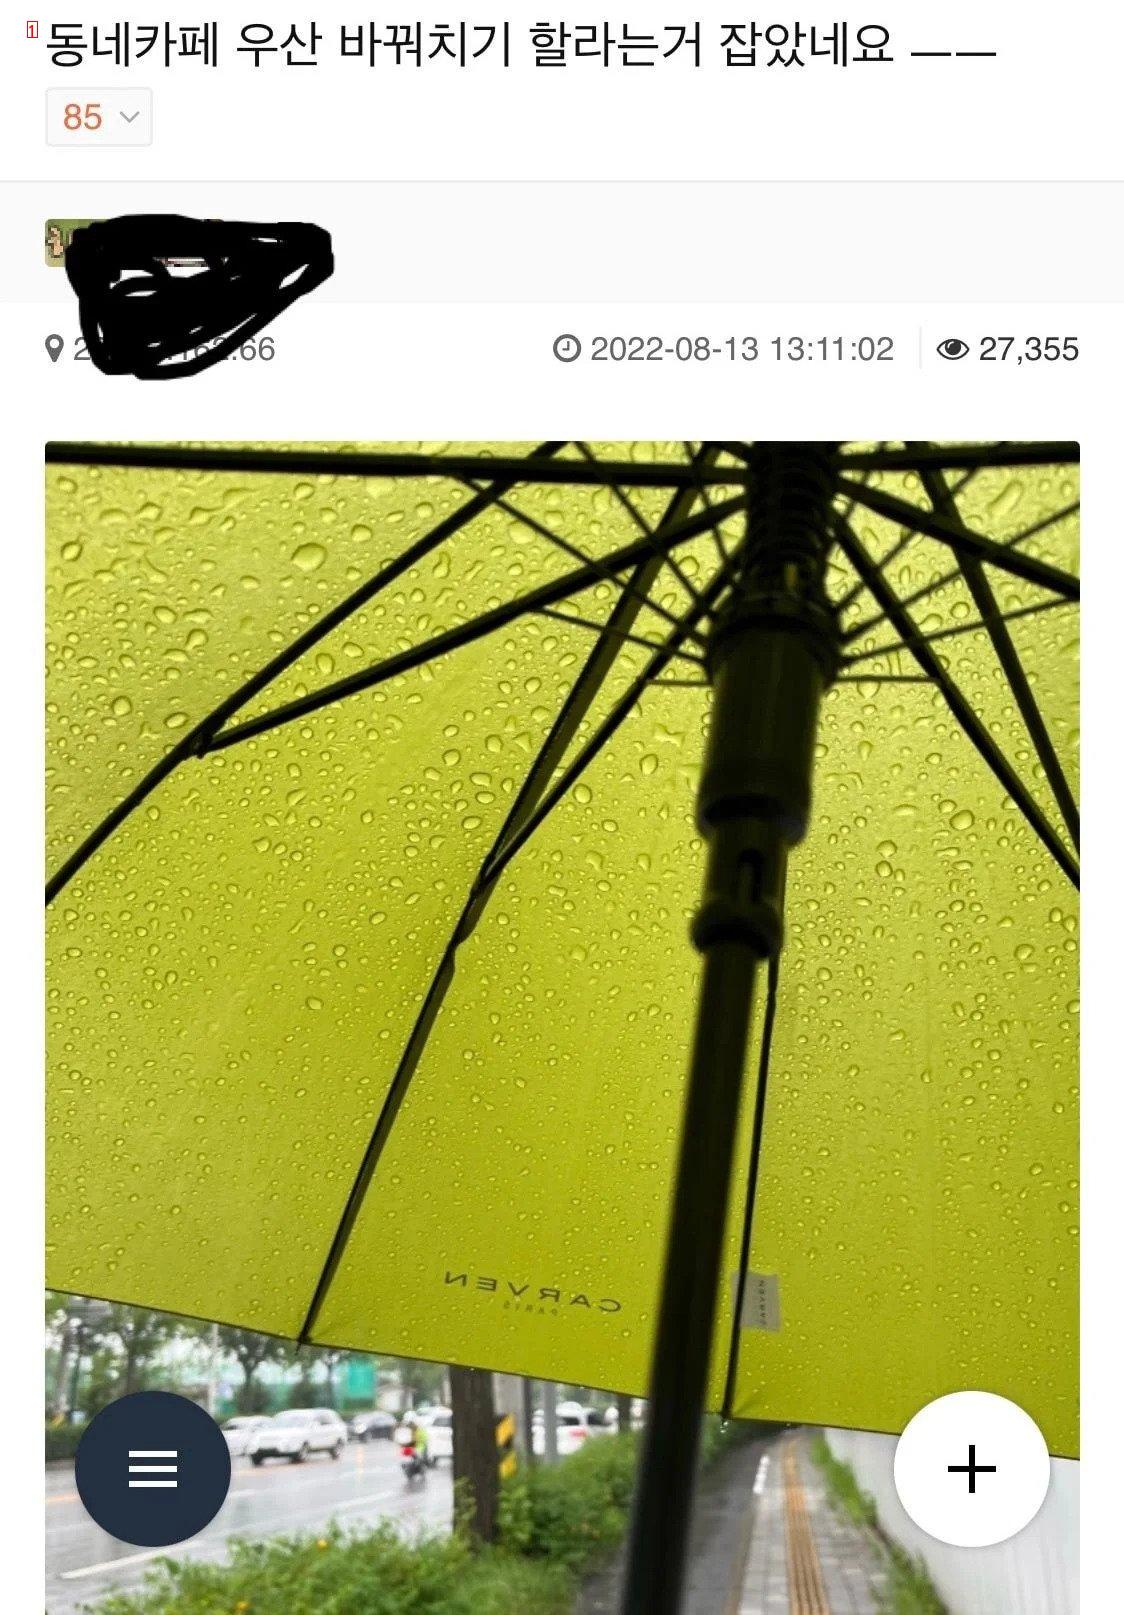 매장 공용 우산통에 우산을 꽂기 꺼려지는 이유